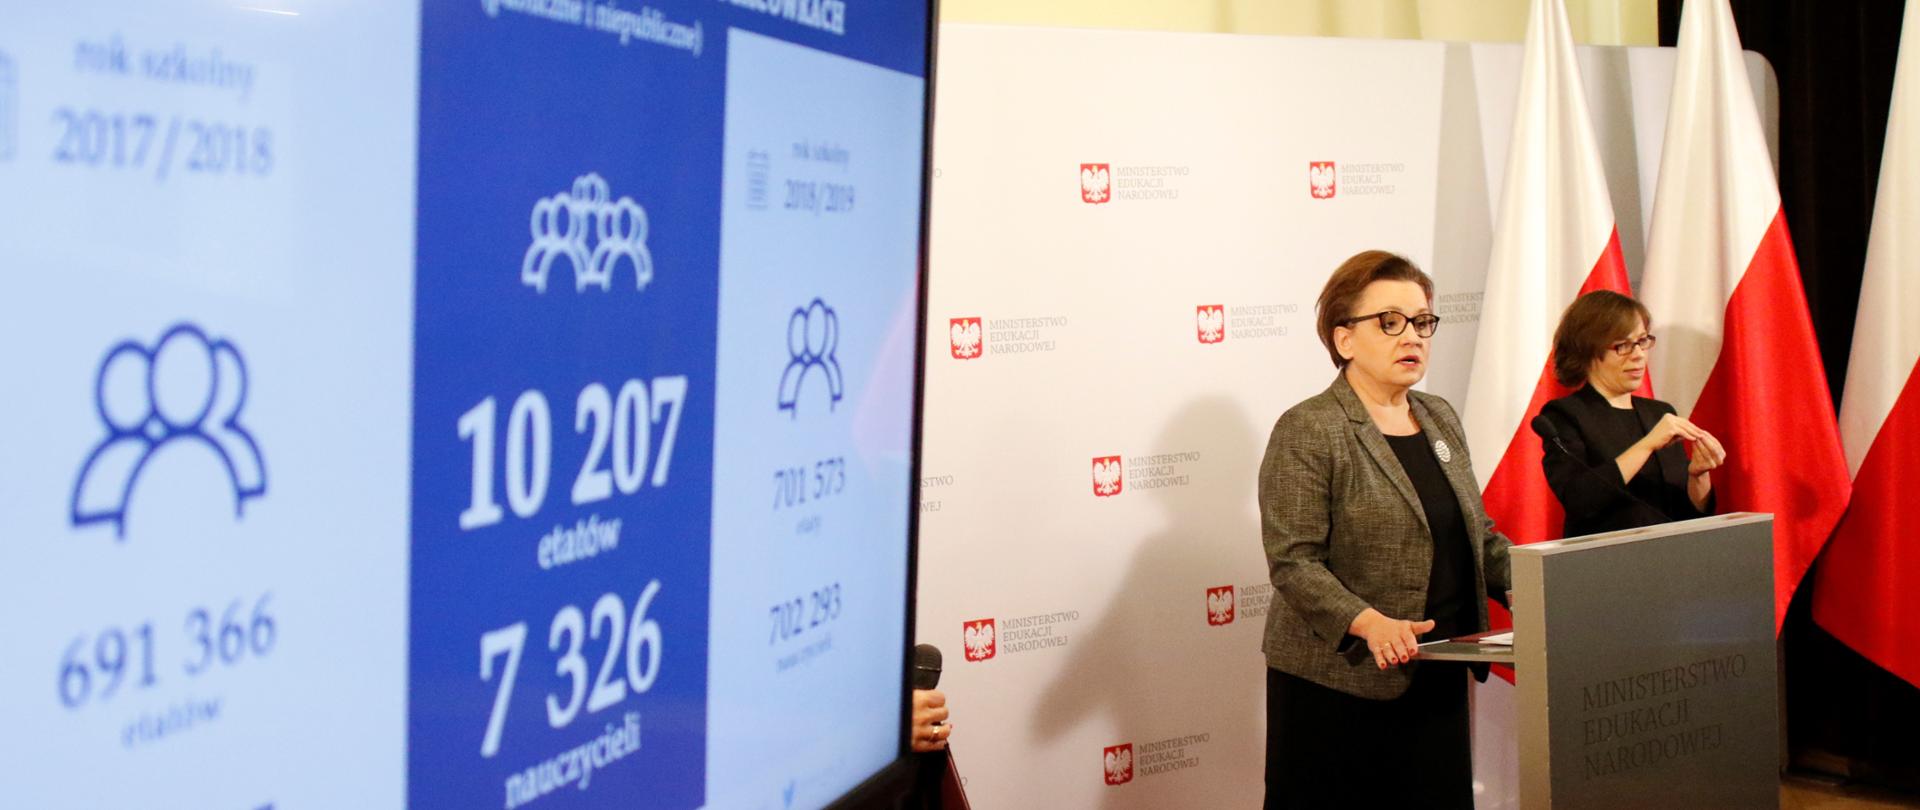 Konferencja prasowa Minister Anny Zalewskiej - prezentacja danych z Systemu Informacji Oświatowej